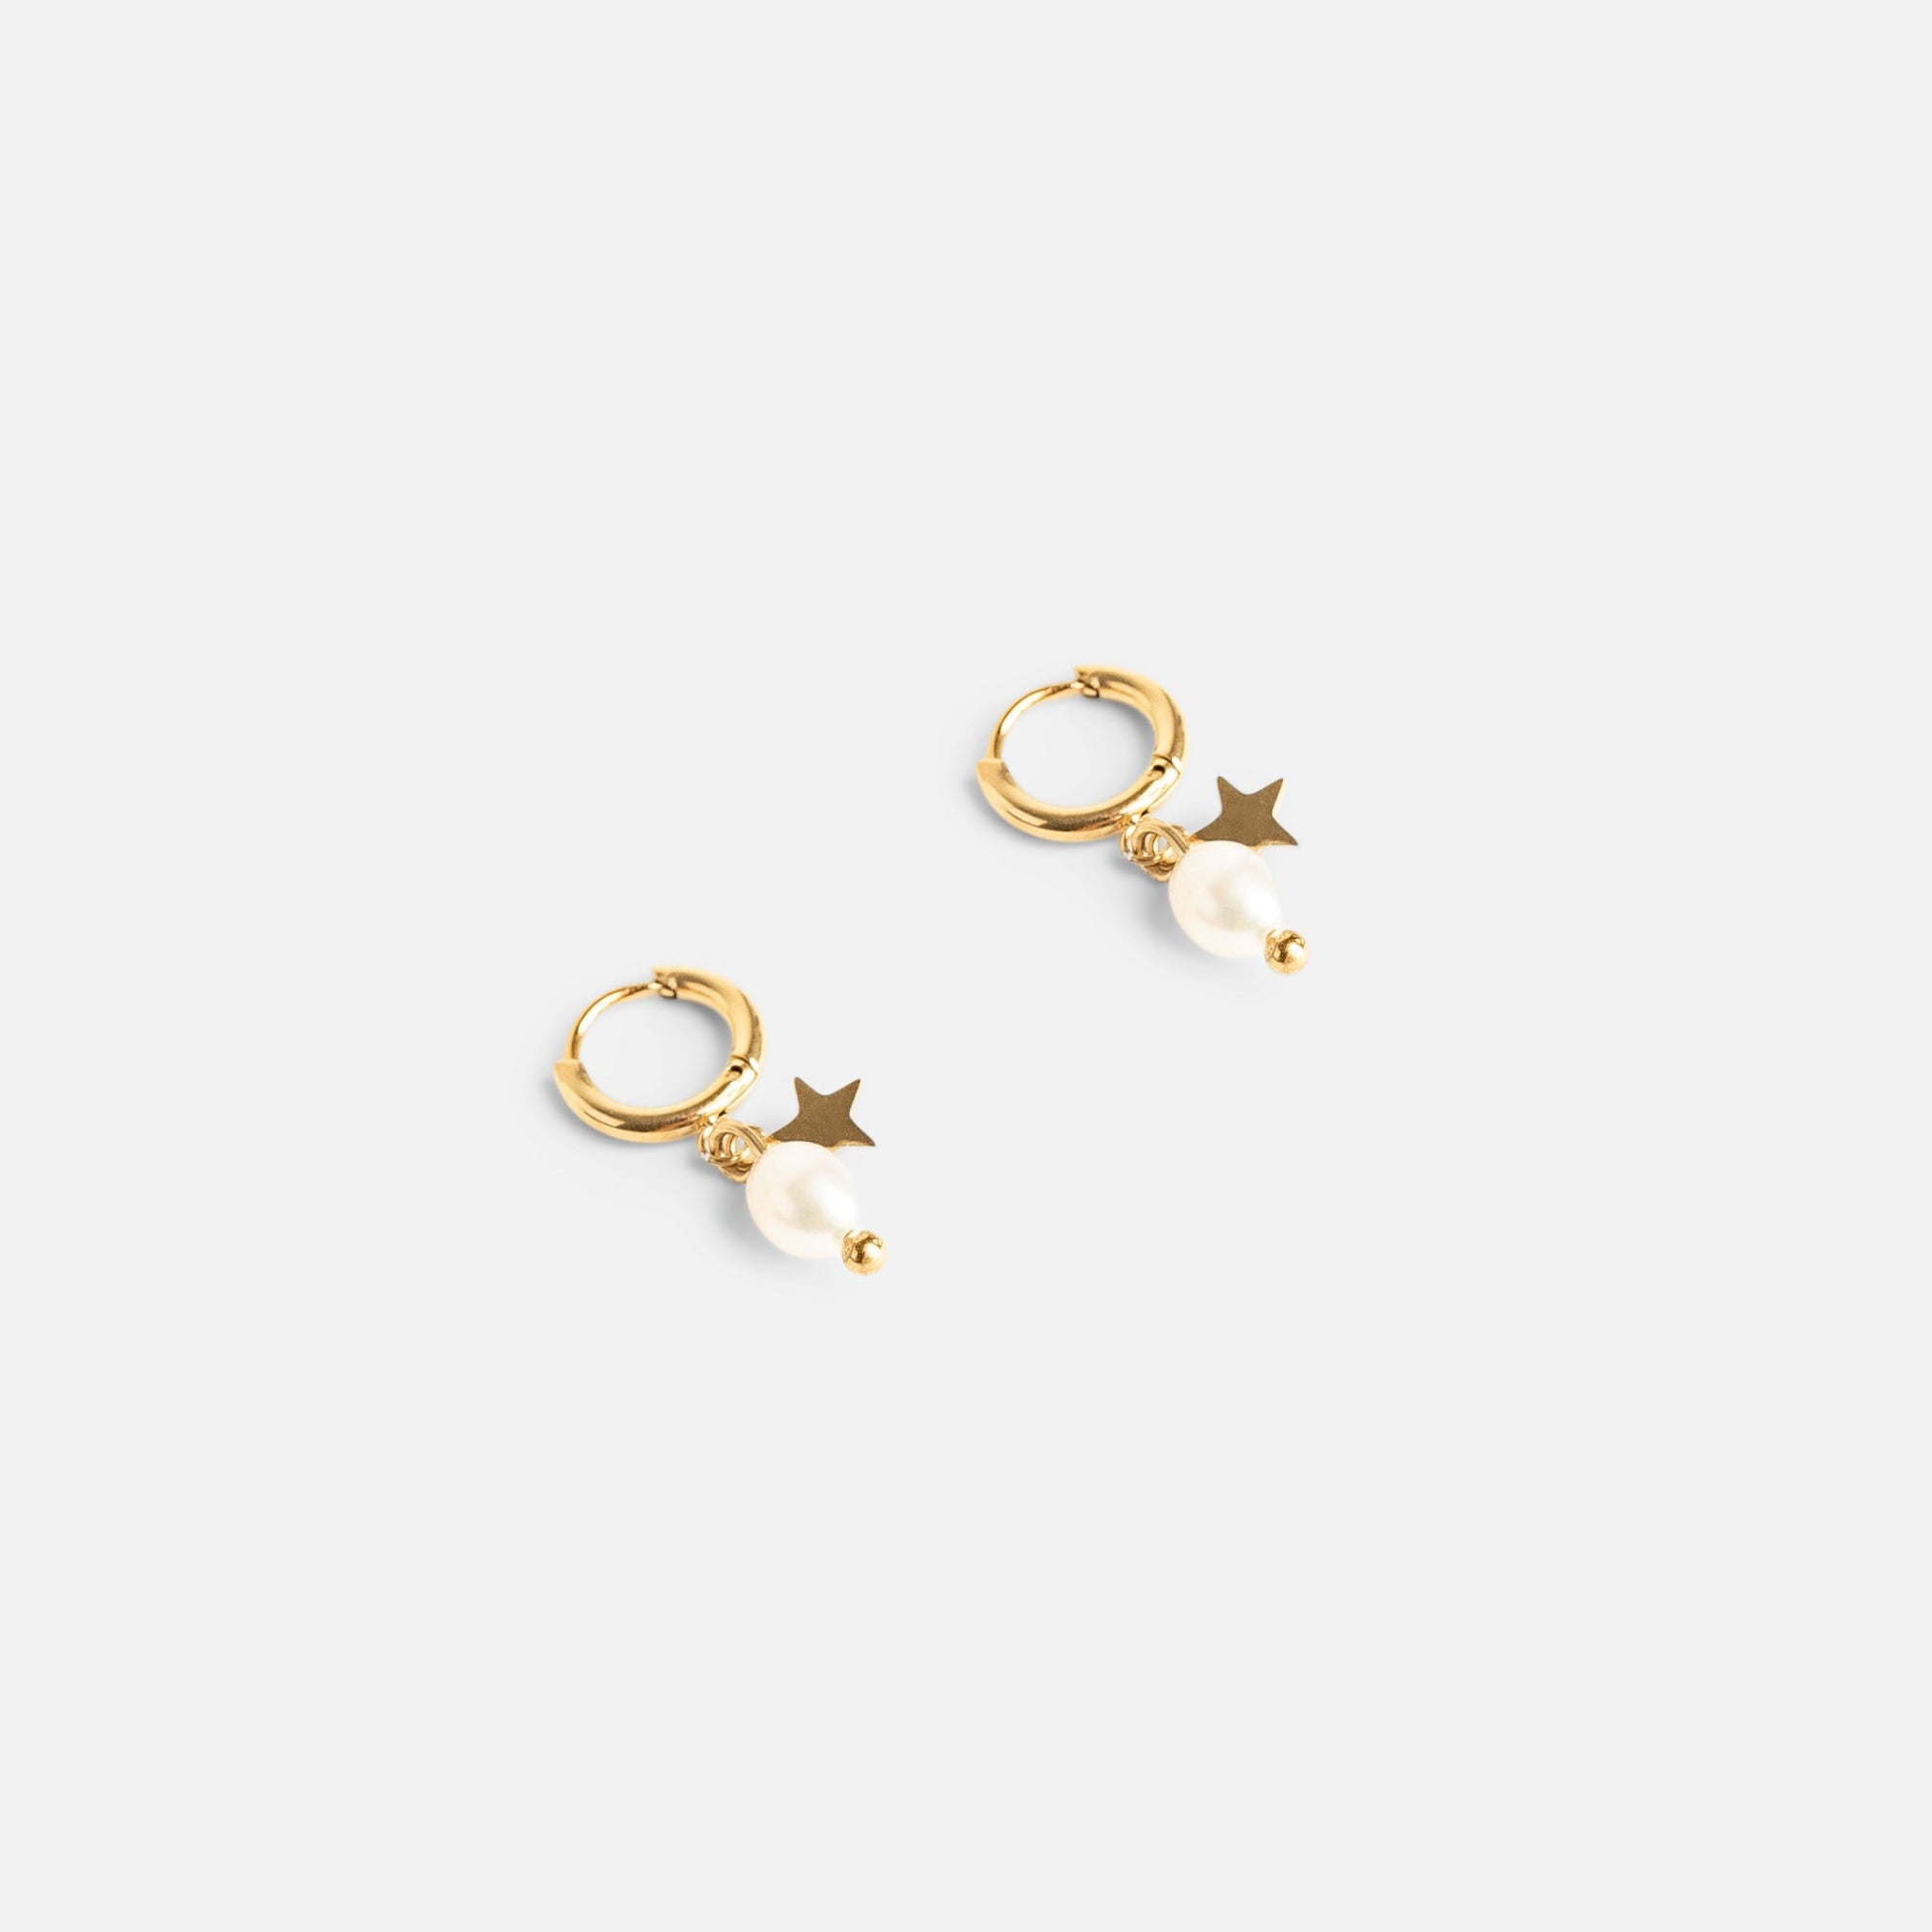 Mini boucles d’oreilles anneaux dorés avec breloque perle et étoile en acier inoxydable